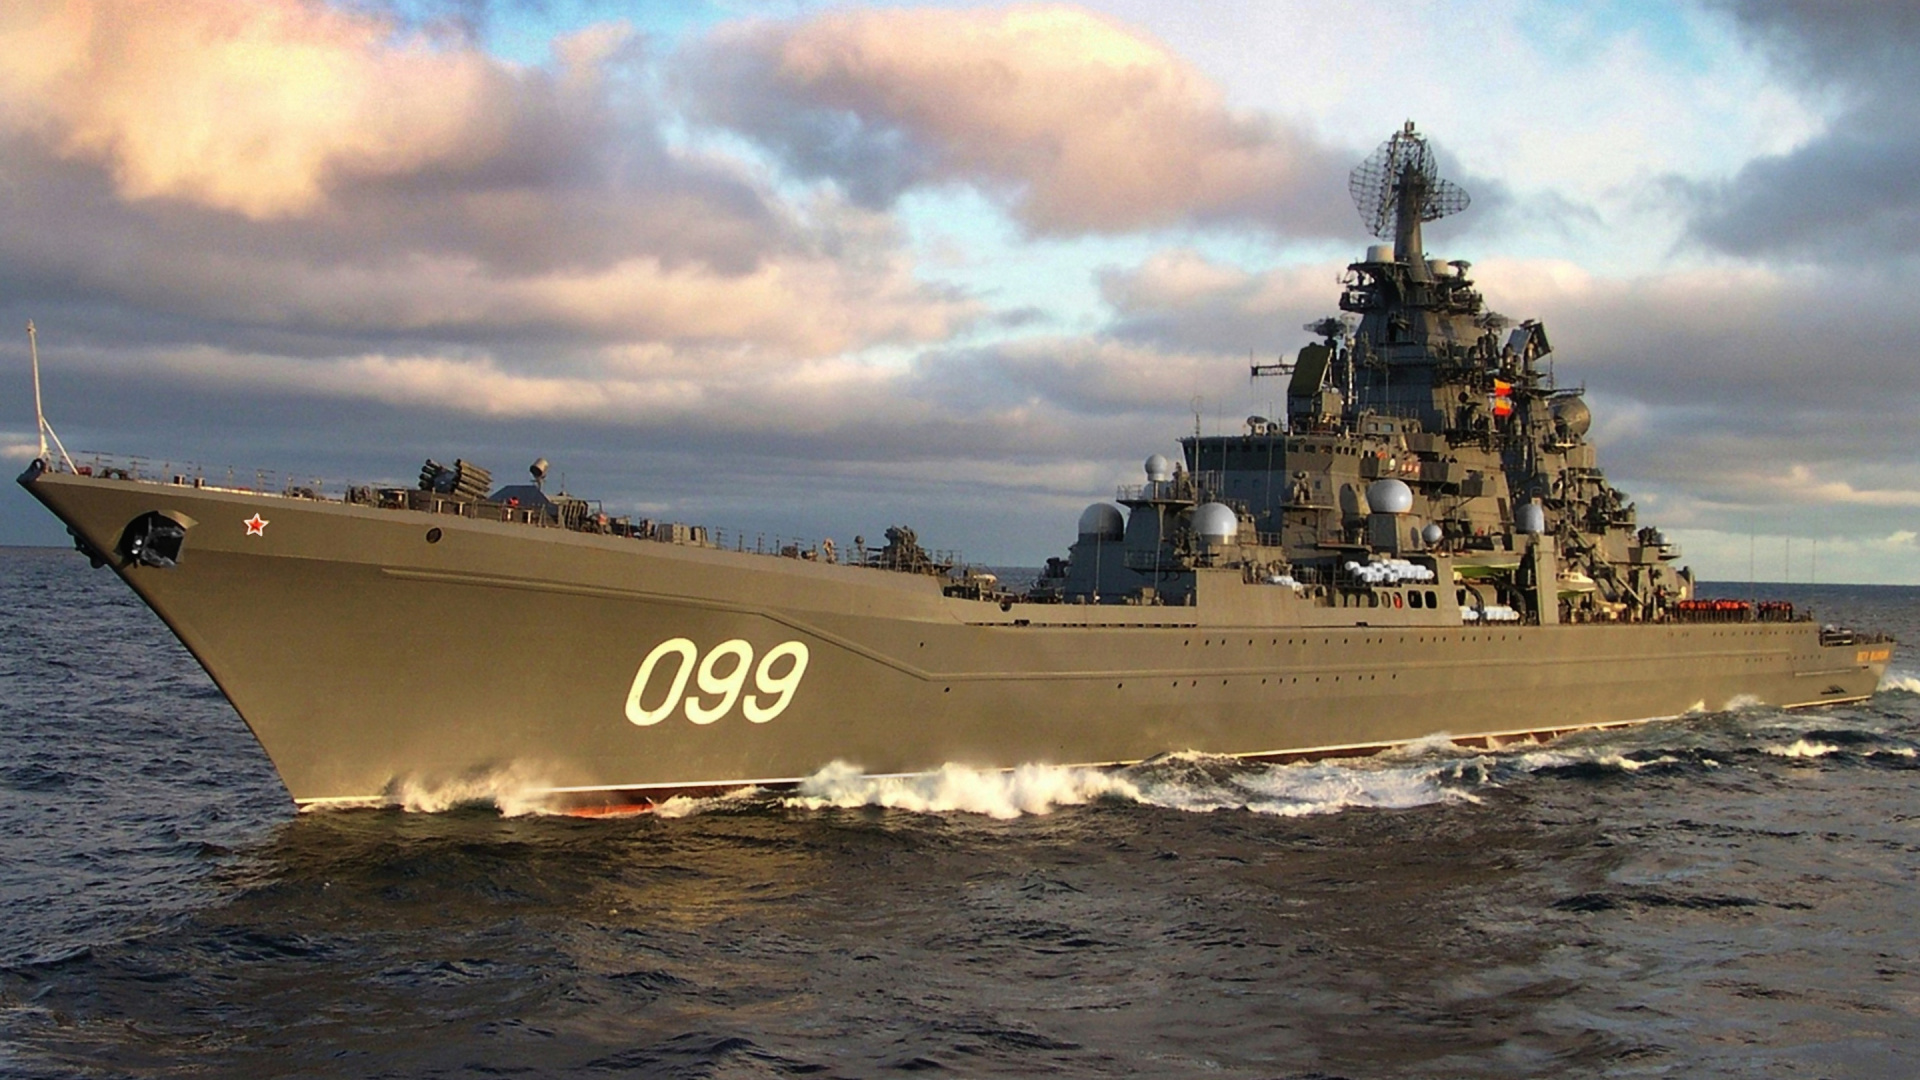 俄罗斯战列巡洋舰 Pyotr Velikiy, 巡洋舰, 军舰, 战舰, 海军的船 壁纸 1920x1080 允许